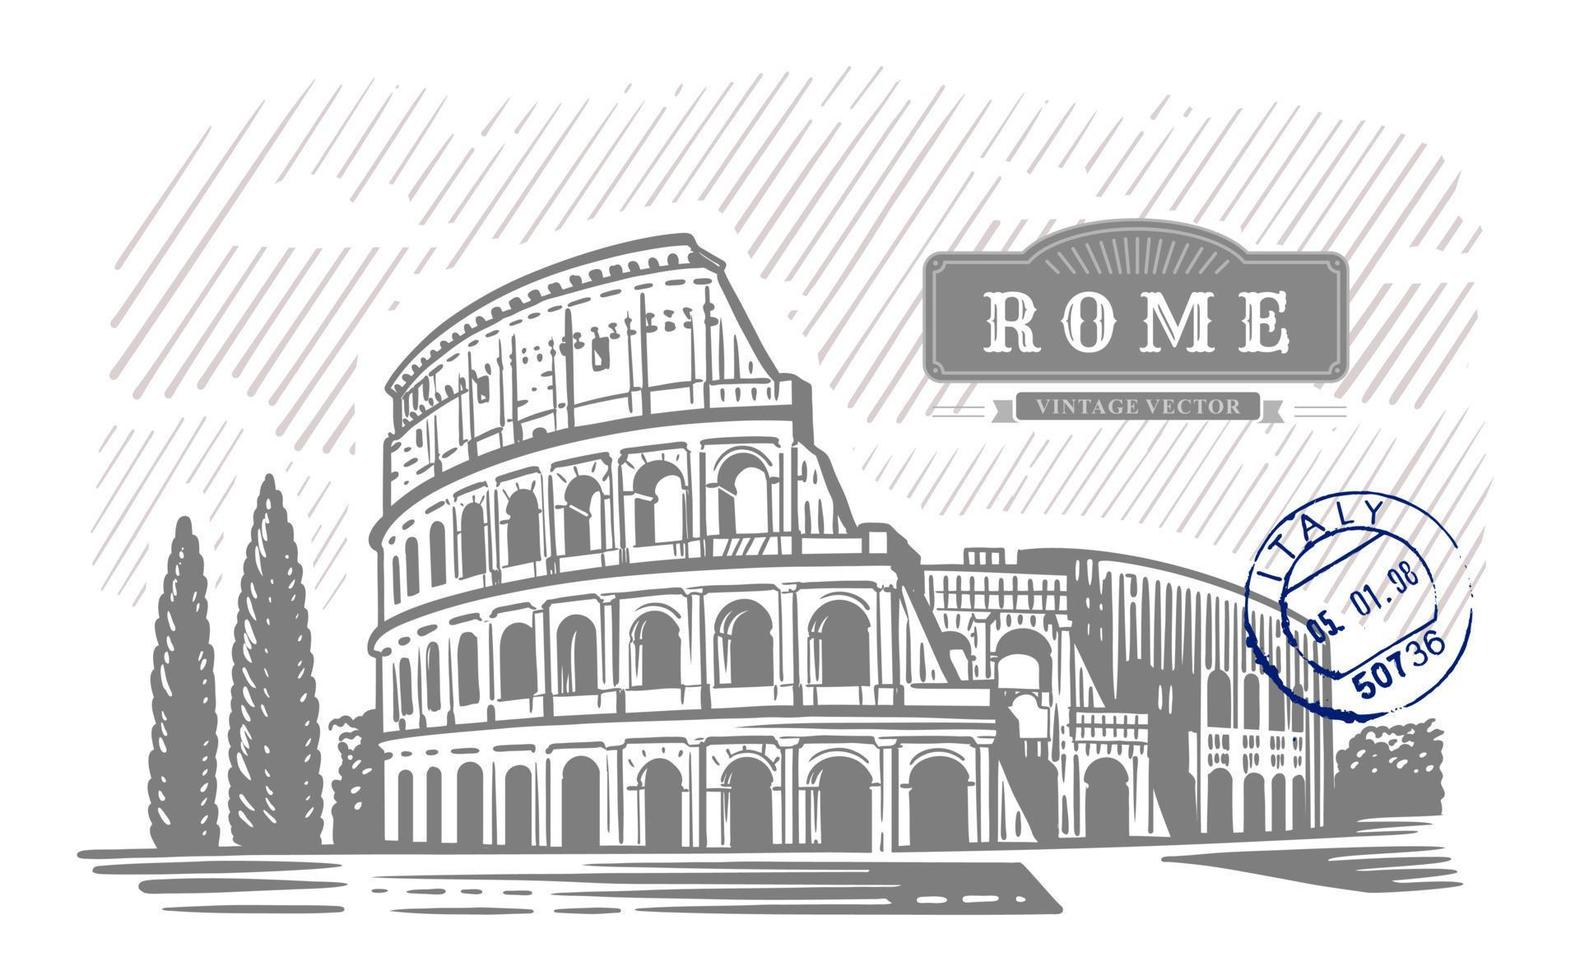 Kolosseum in Italien. handgezeichnete Abbildung. Rom. berühmtes historisches Wahrzeichen vektor